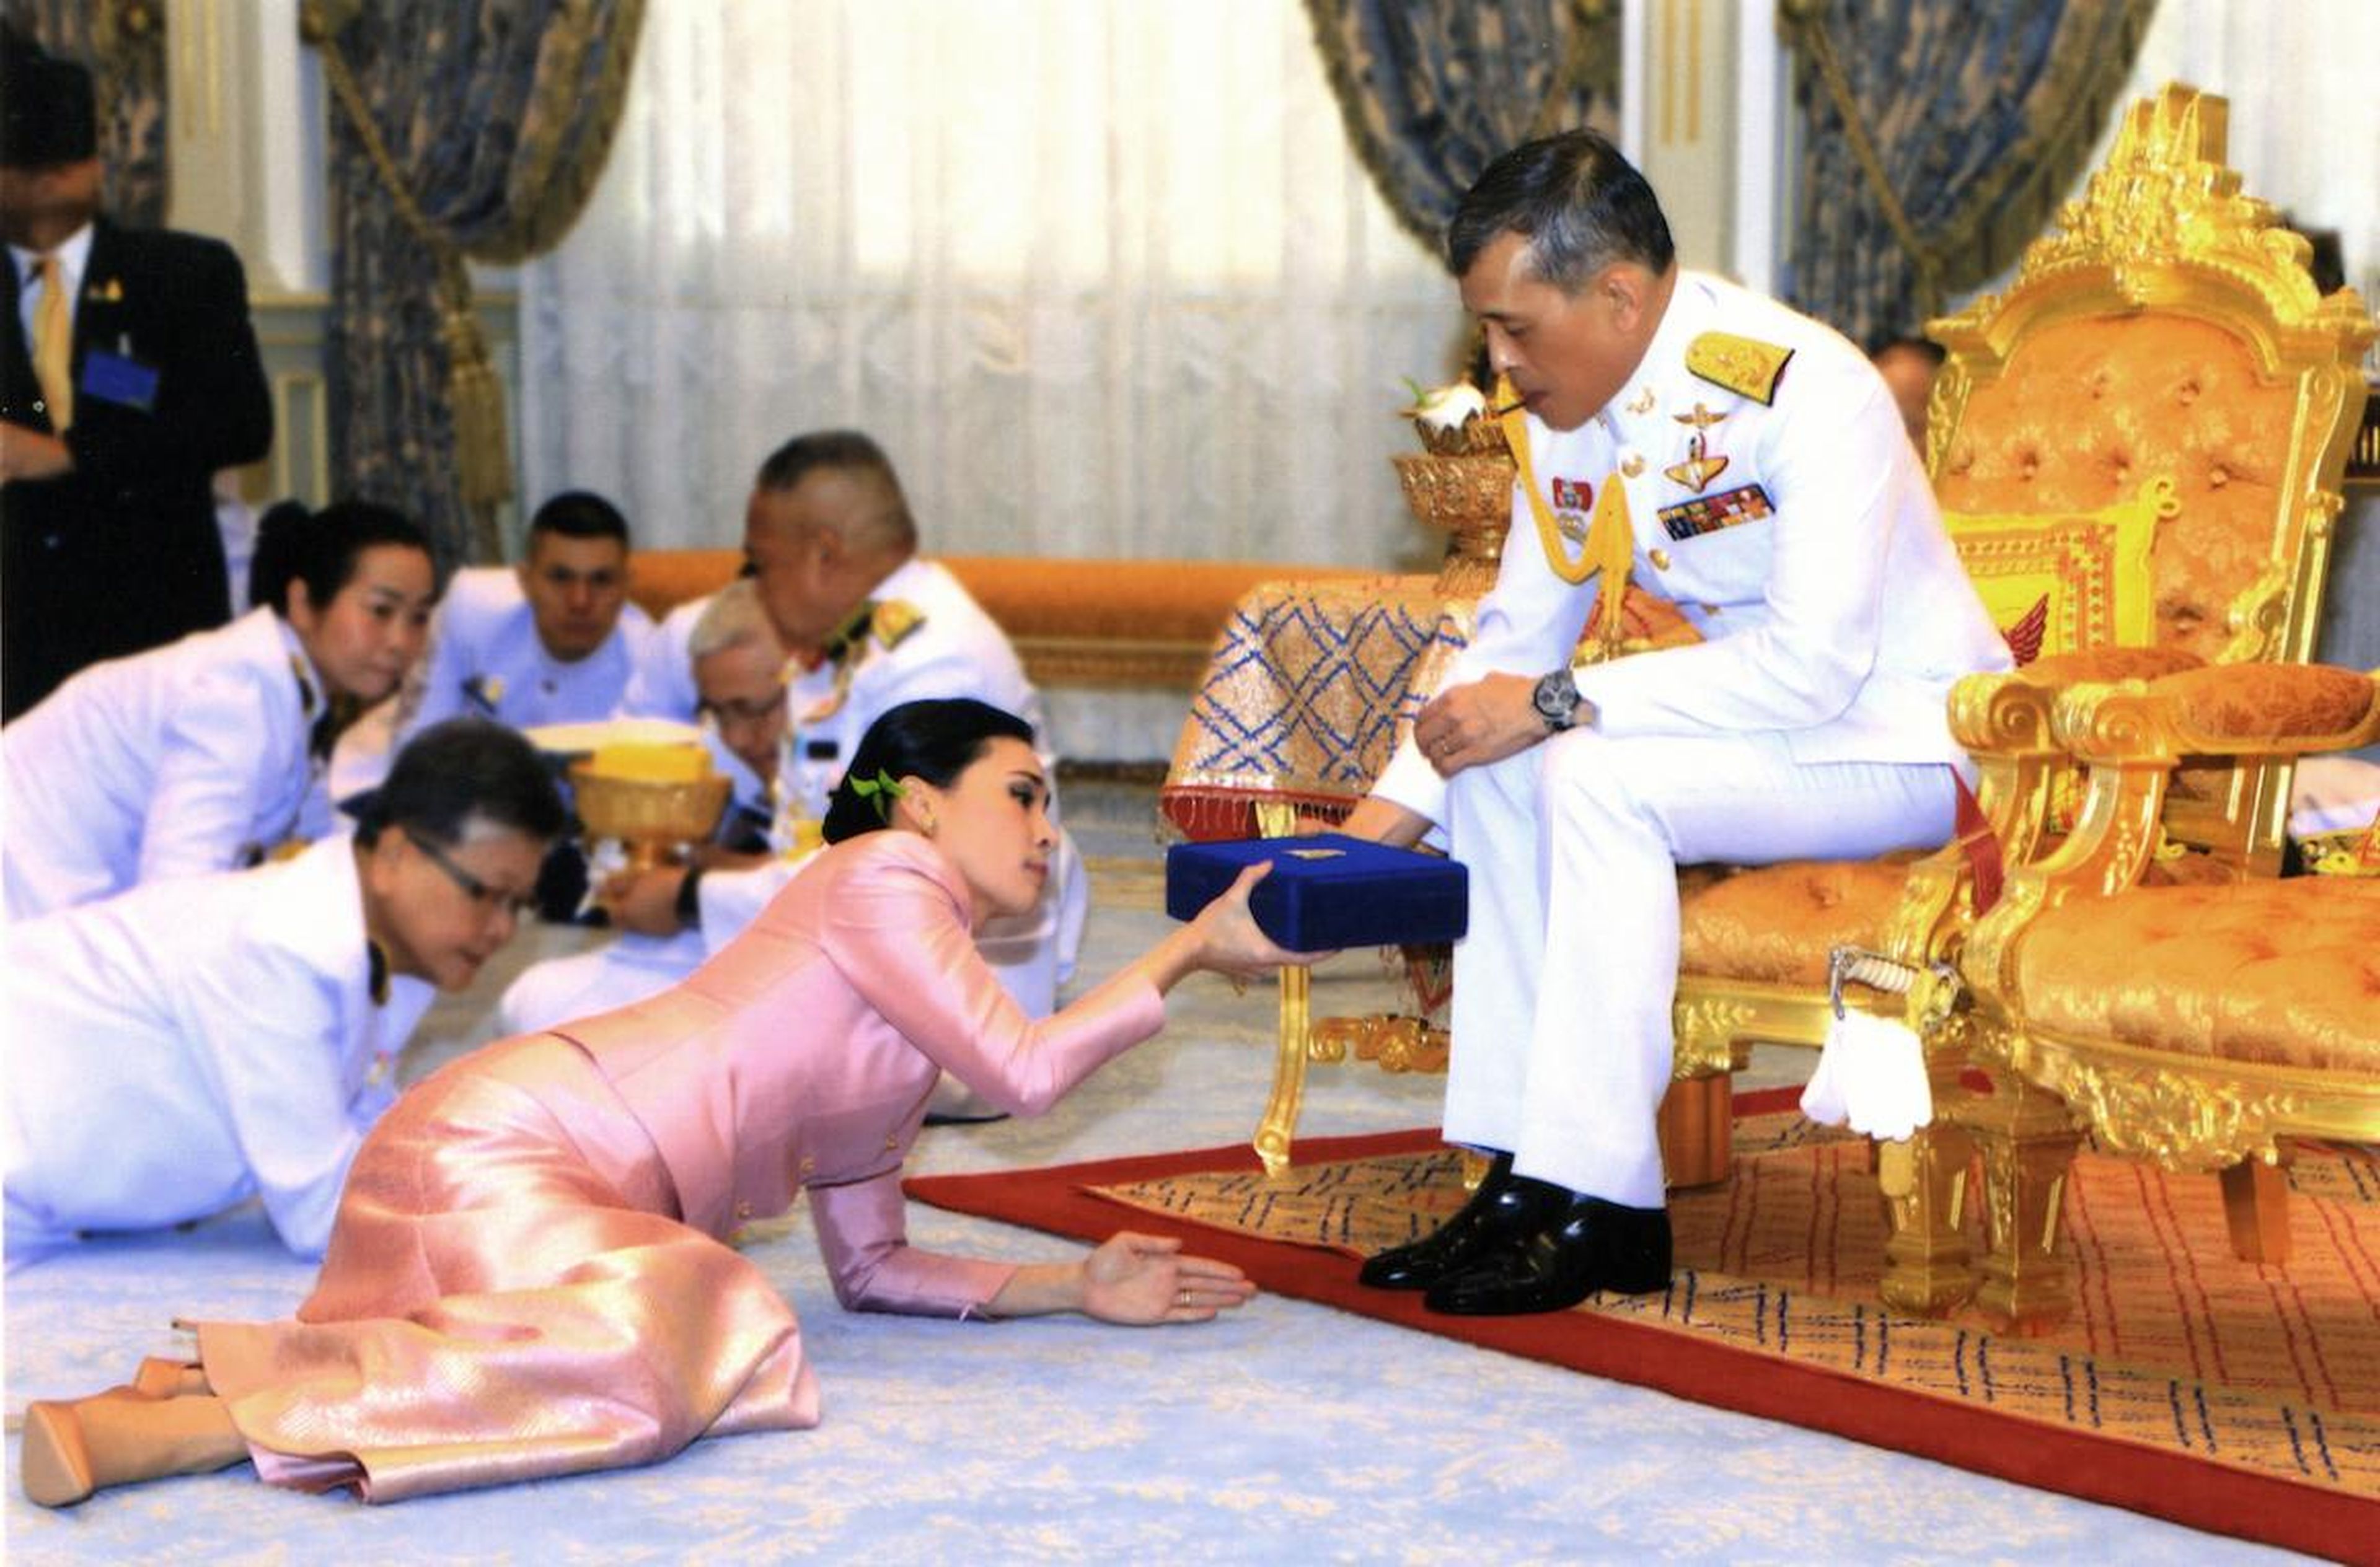 El rey de Tailandia Maha Vajiralongkorn presenta un regalo a la reina Suthida en su boda el 1 de mayo de 2019.